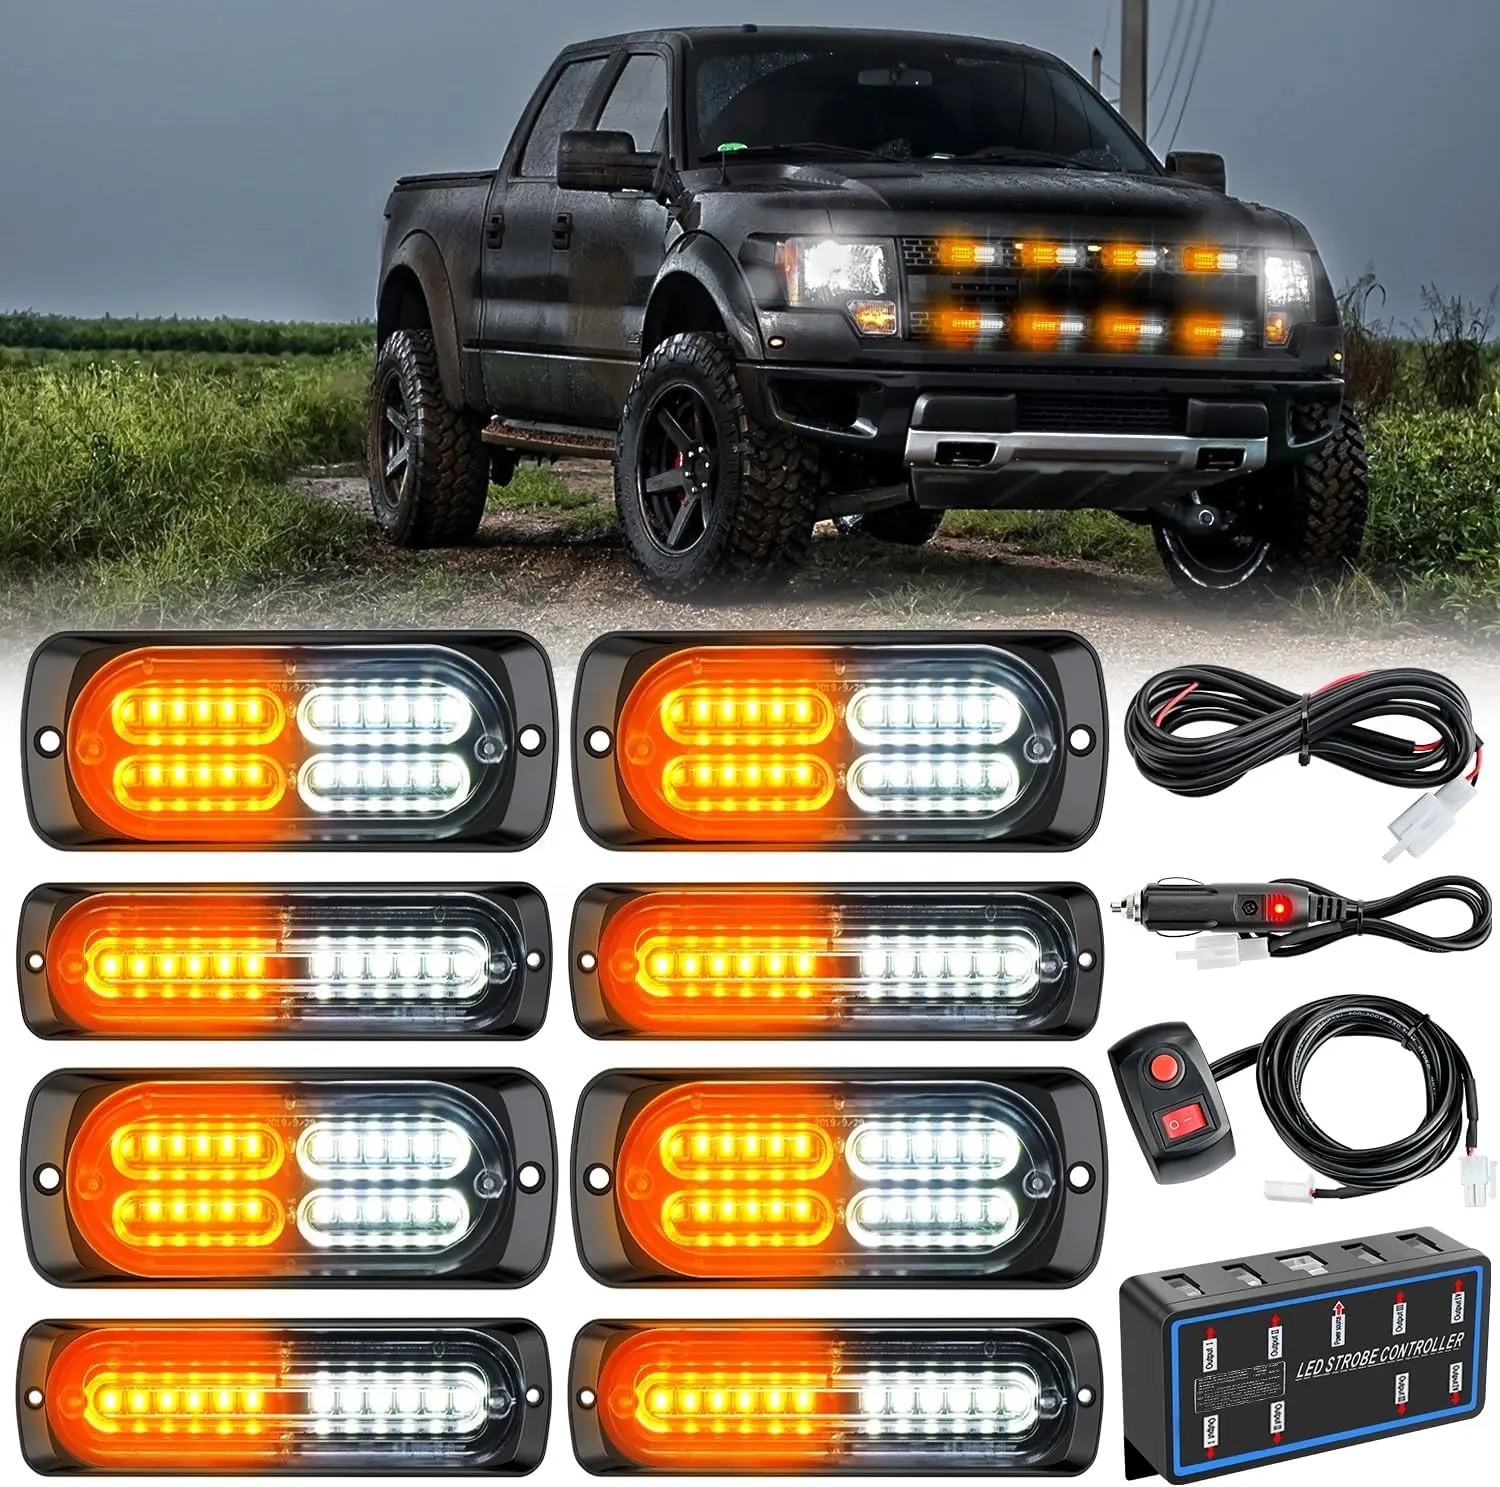 8 יחידות נורות LED הדלקת 12V תכונה ענבר לבן נורות אזהרה חירום עם בקר הדלקת לרכב משאיות קרוואנים חניכים